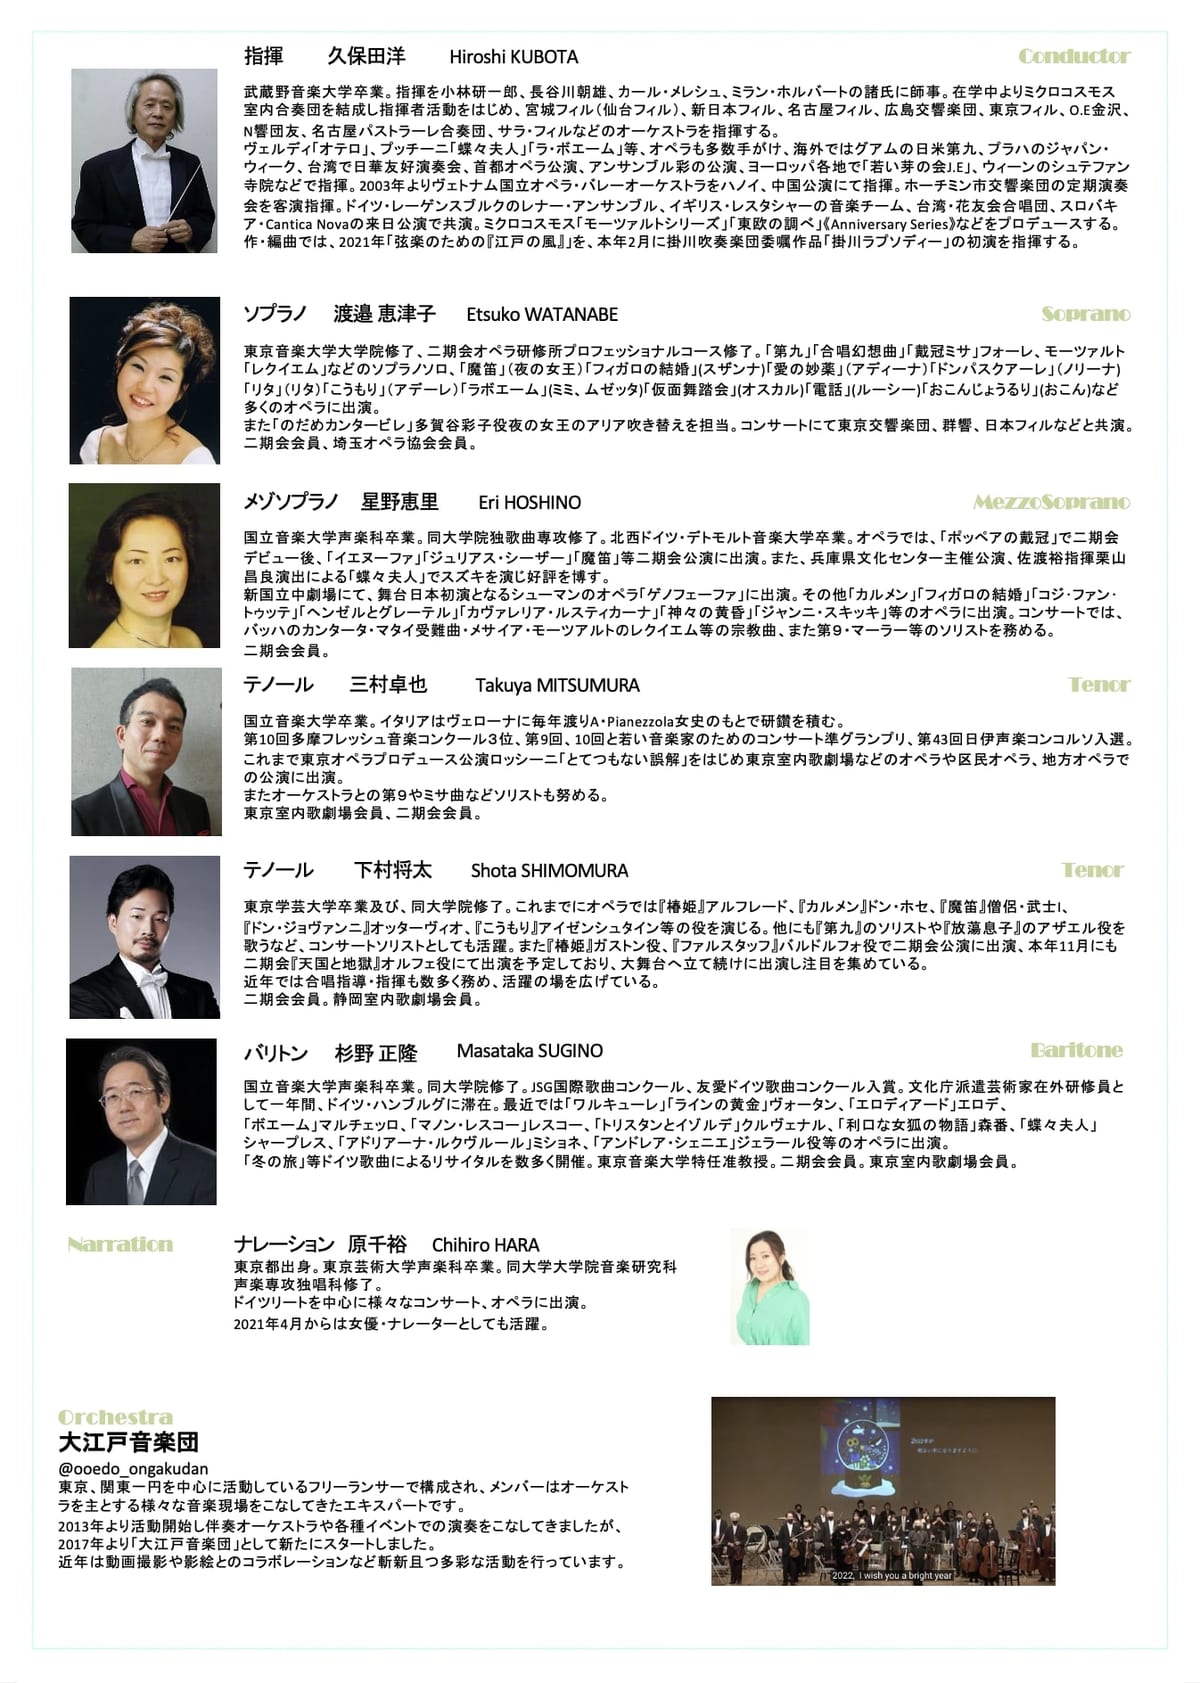 大江戸音楽団8月18日公演「Tokyo Comic Opera」4